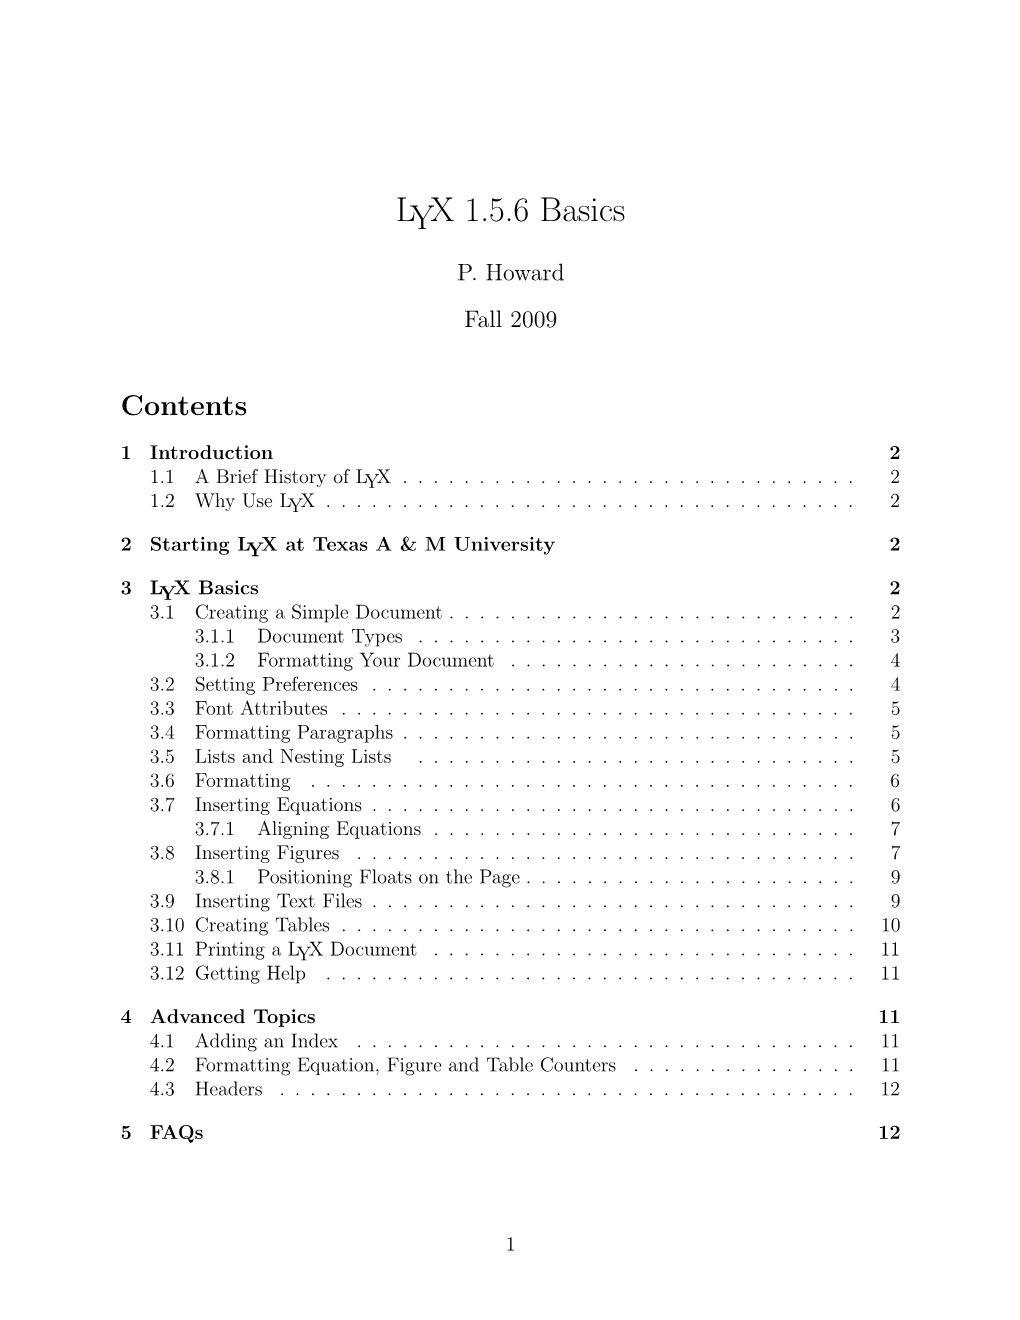 LYX 1.5.6 Basics